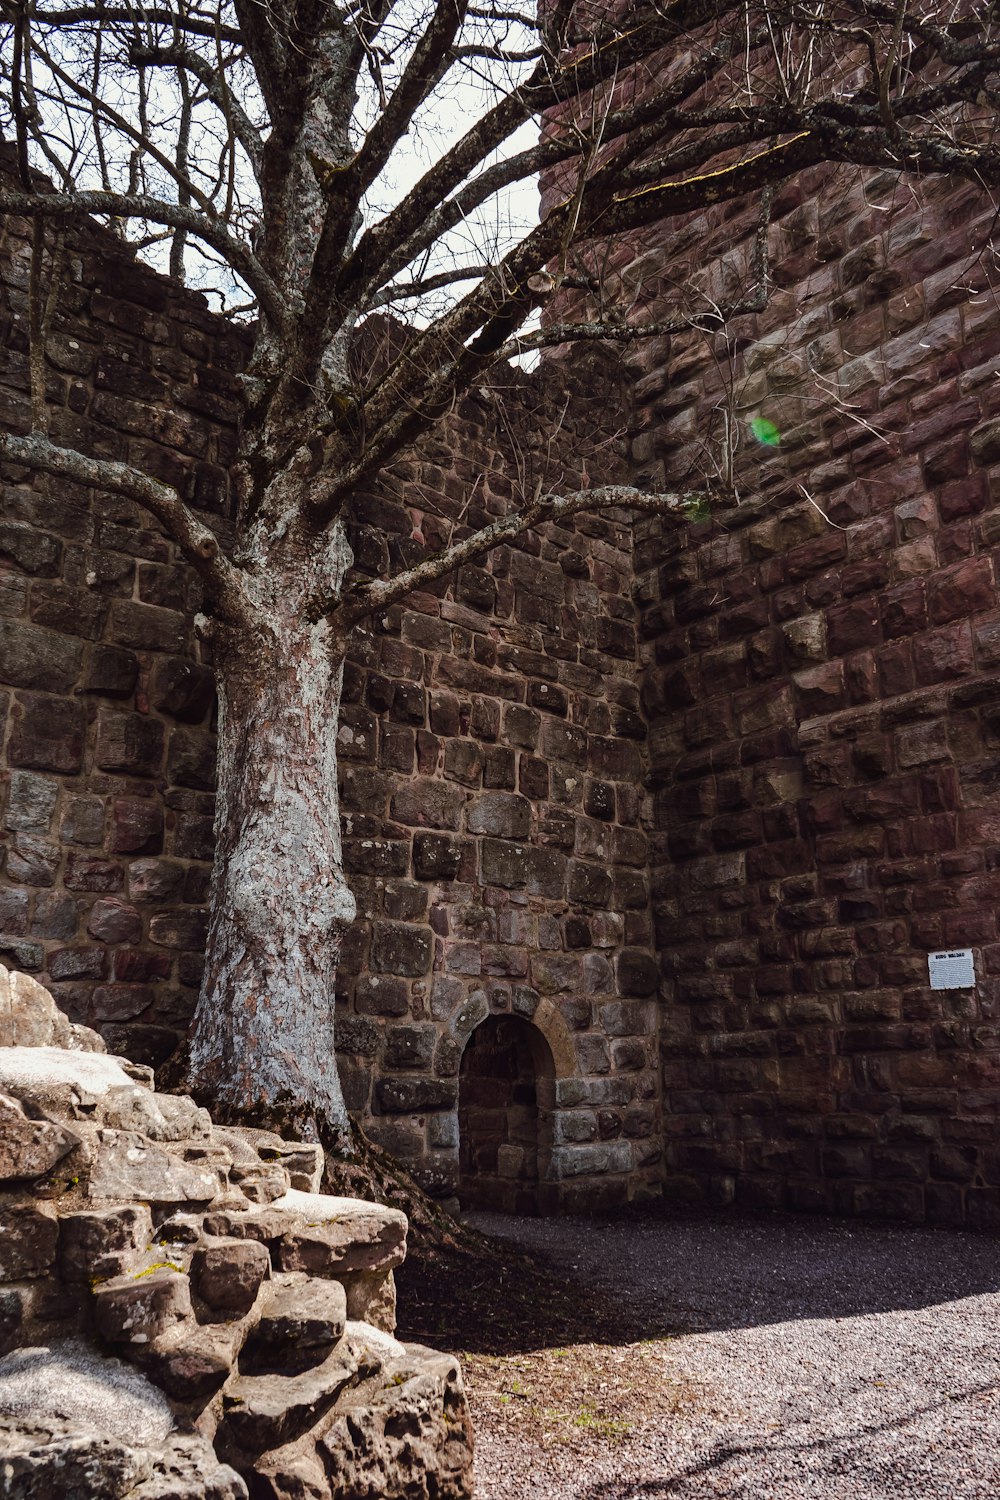 오래된 벽돌 벽에서 자라는 나무